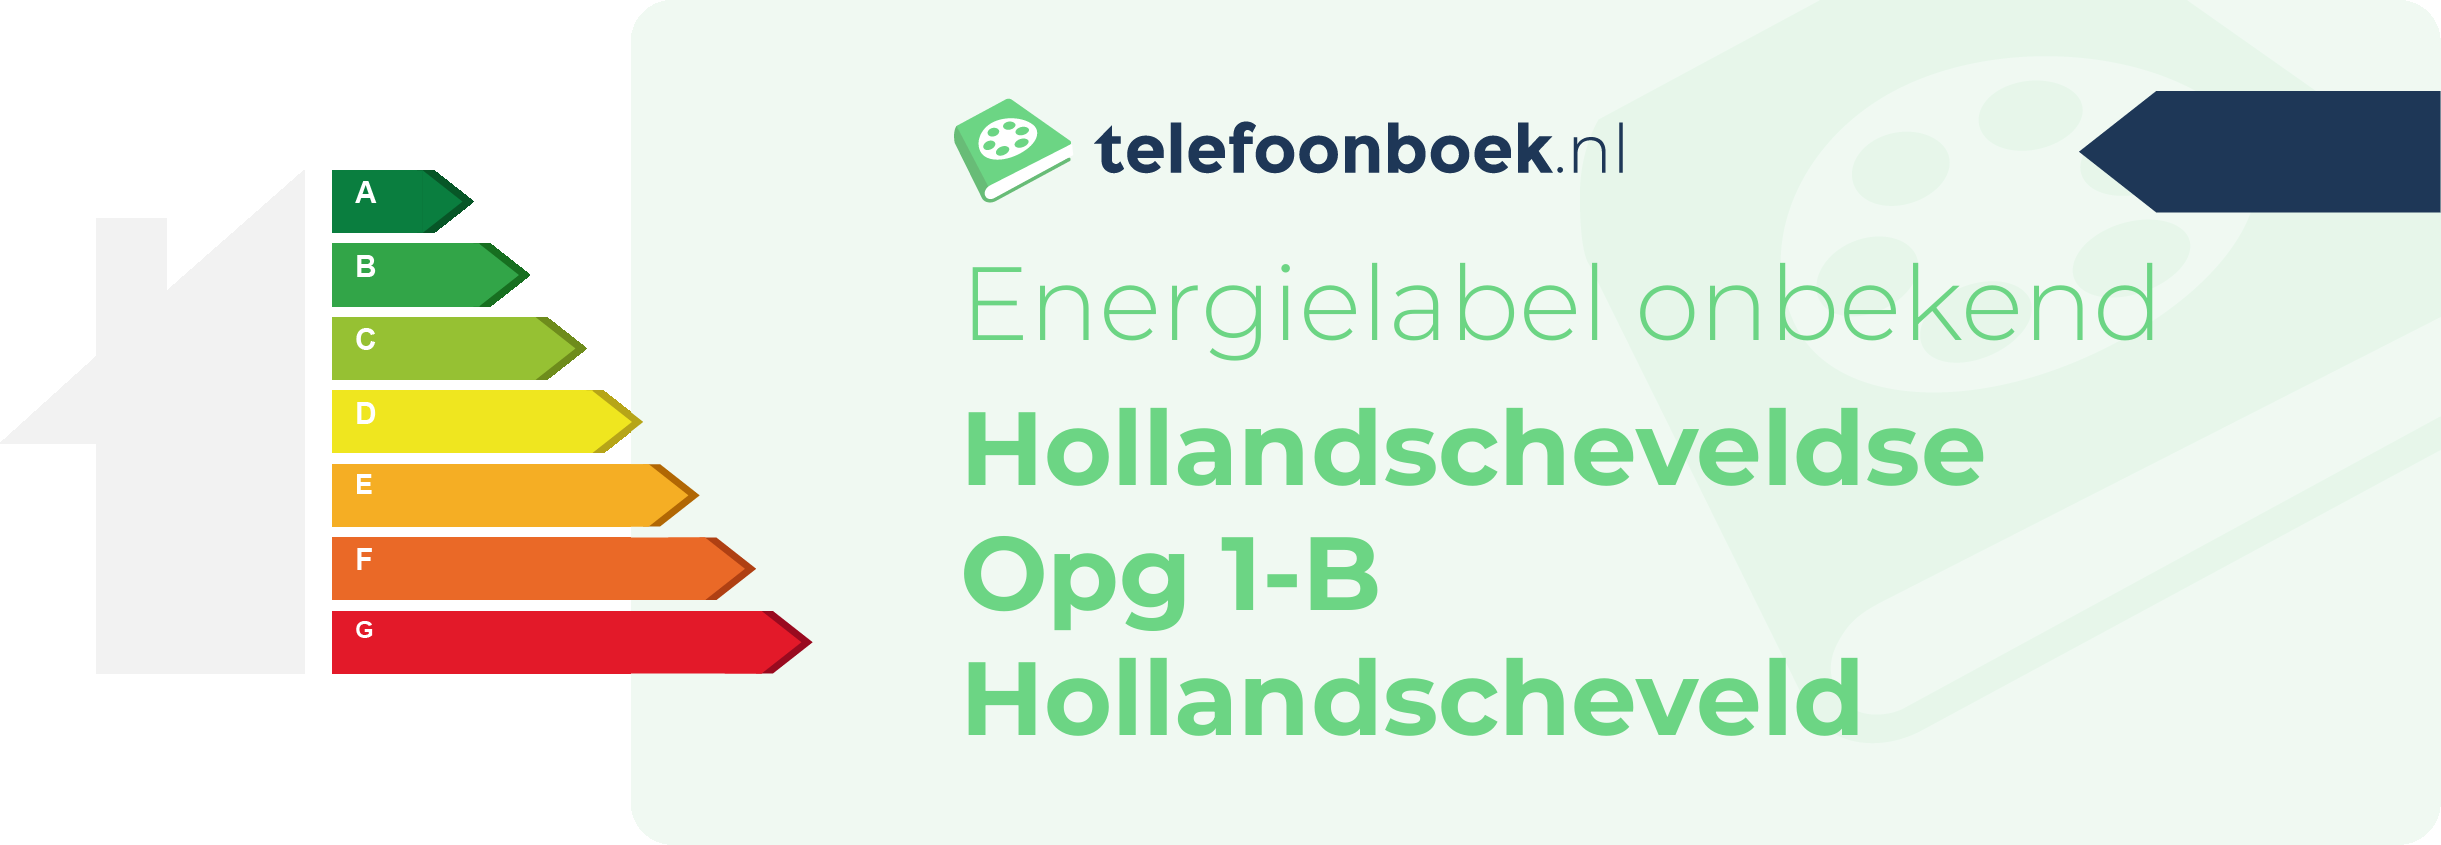 Energielabel Hollandscheveldse Opg 1-B Hollandscheveld